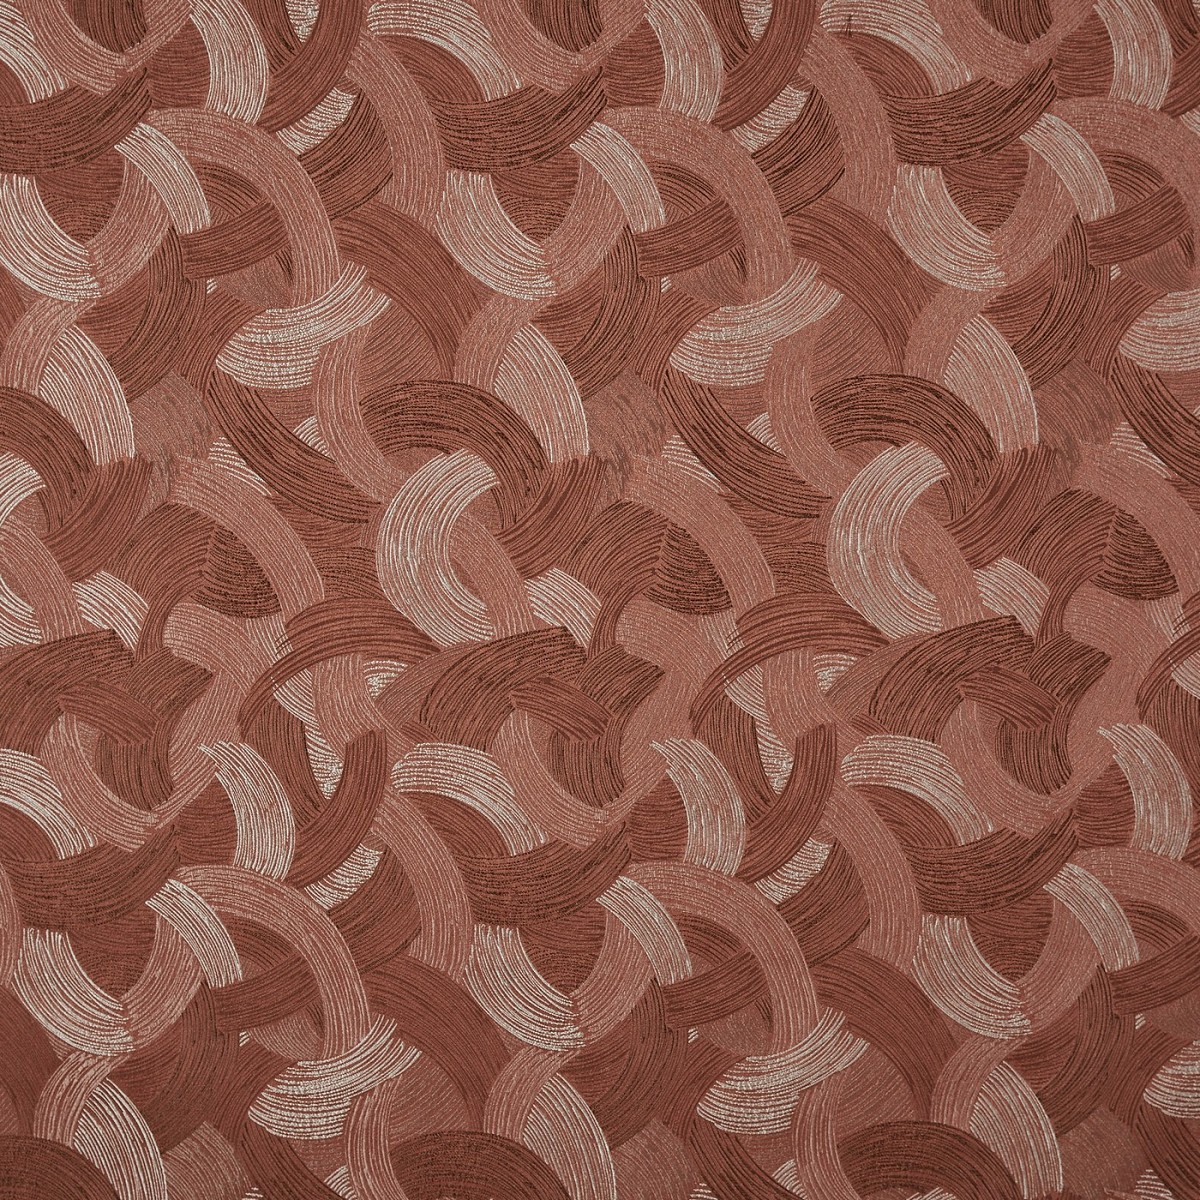 Sagittarius Copper Fabric by Prestigious Textiles